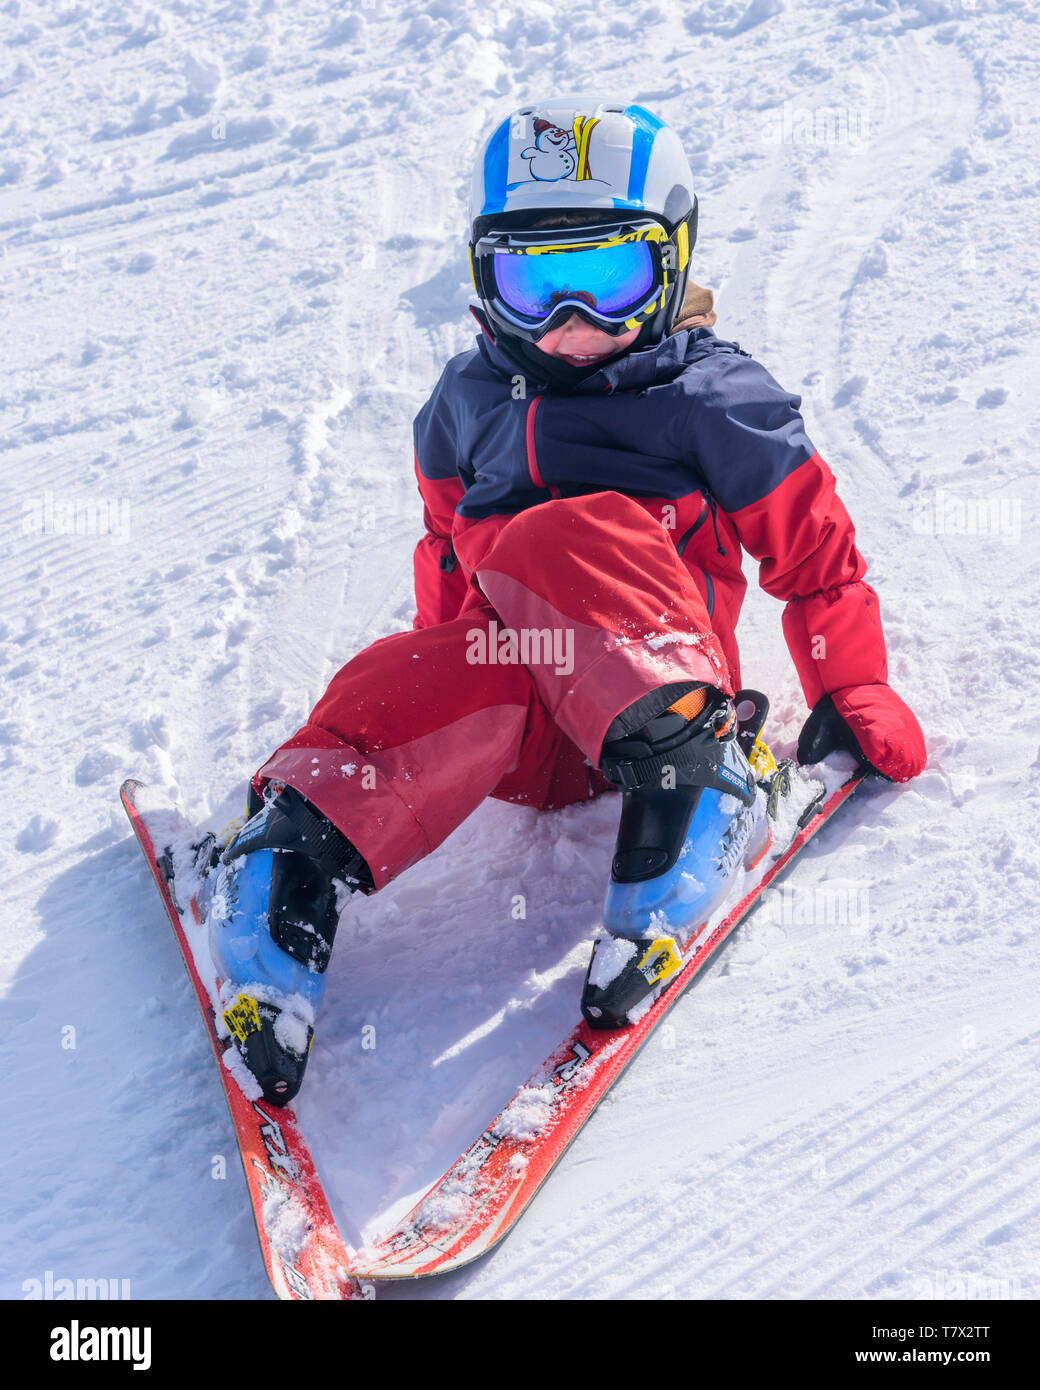 Cute little boy sur ski slope Banque D'Images